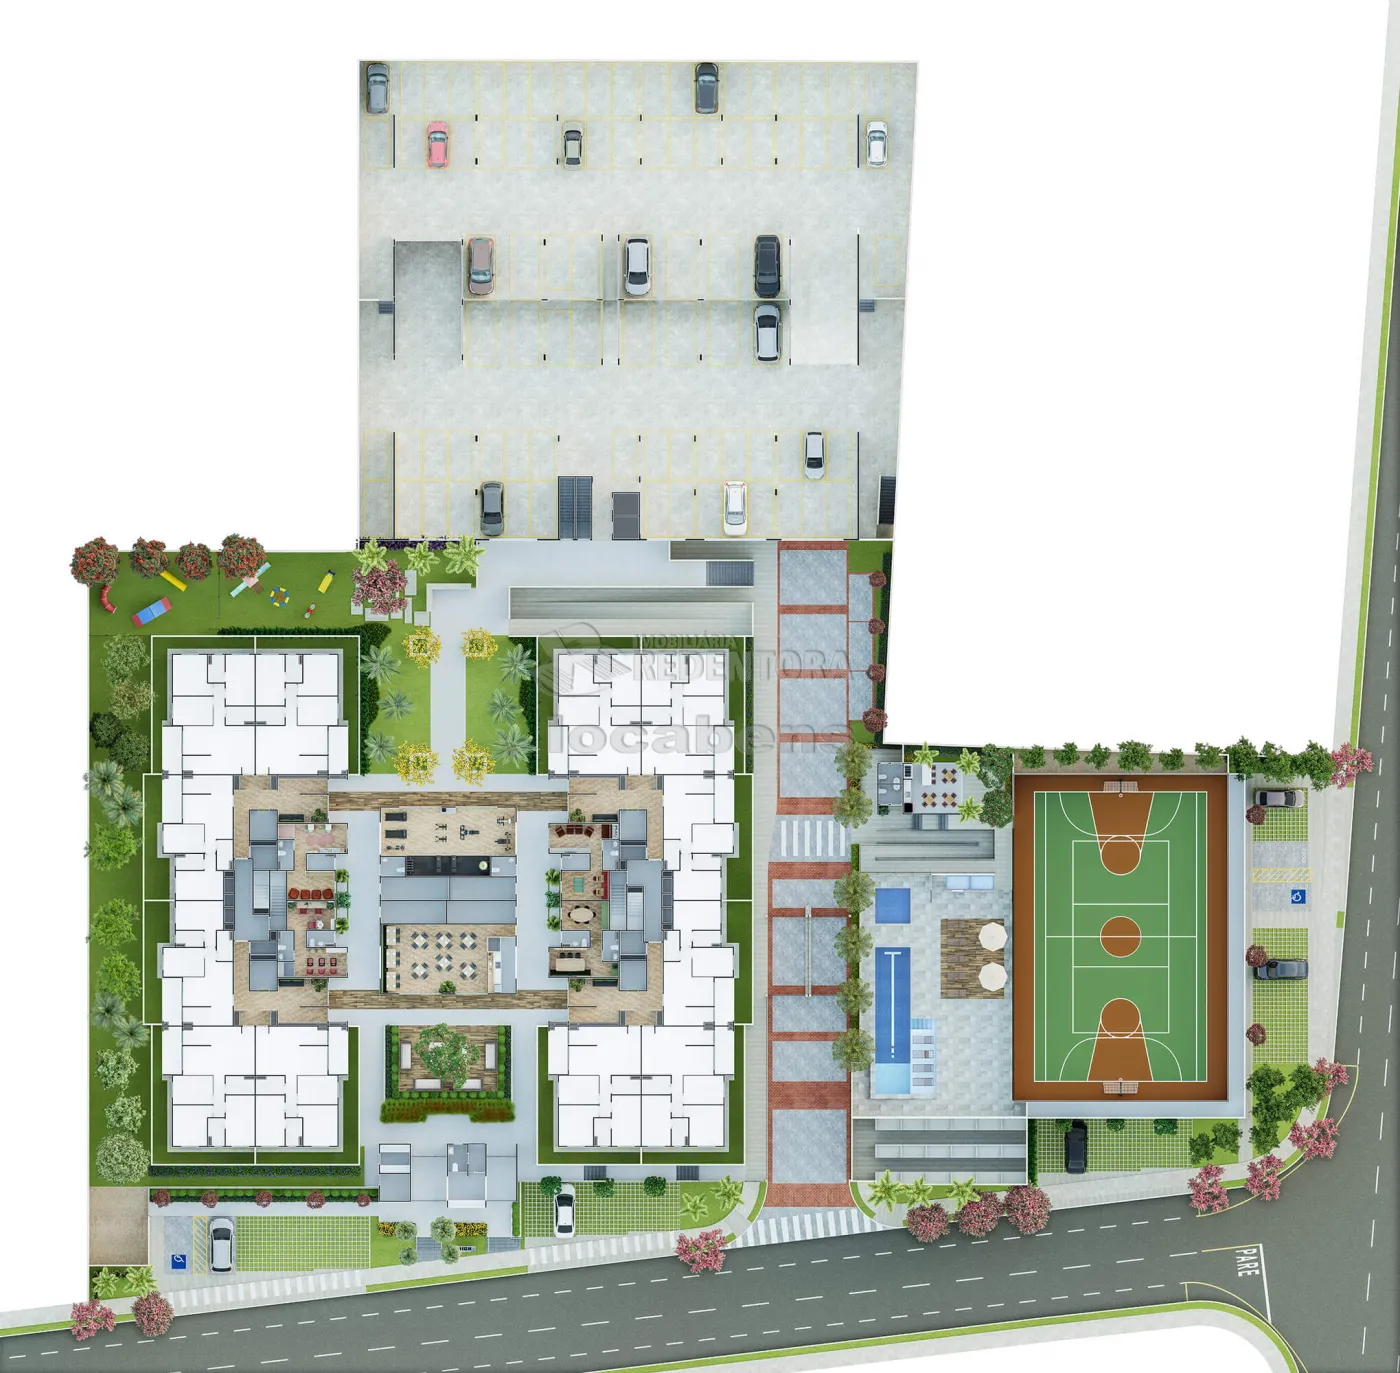 Comprar Apartamento / Padrão em São José do Rio Preto apenas R$ 460.000,00 - Foto 8